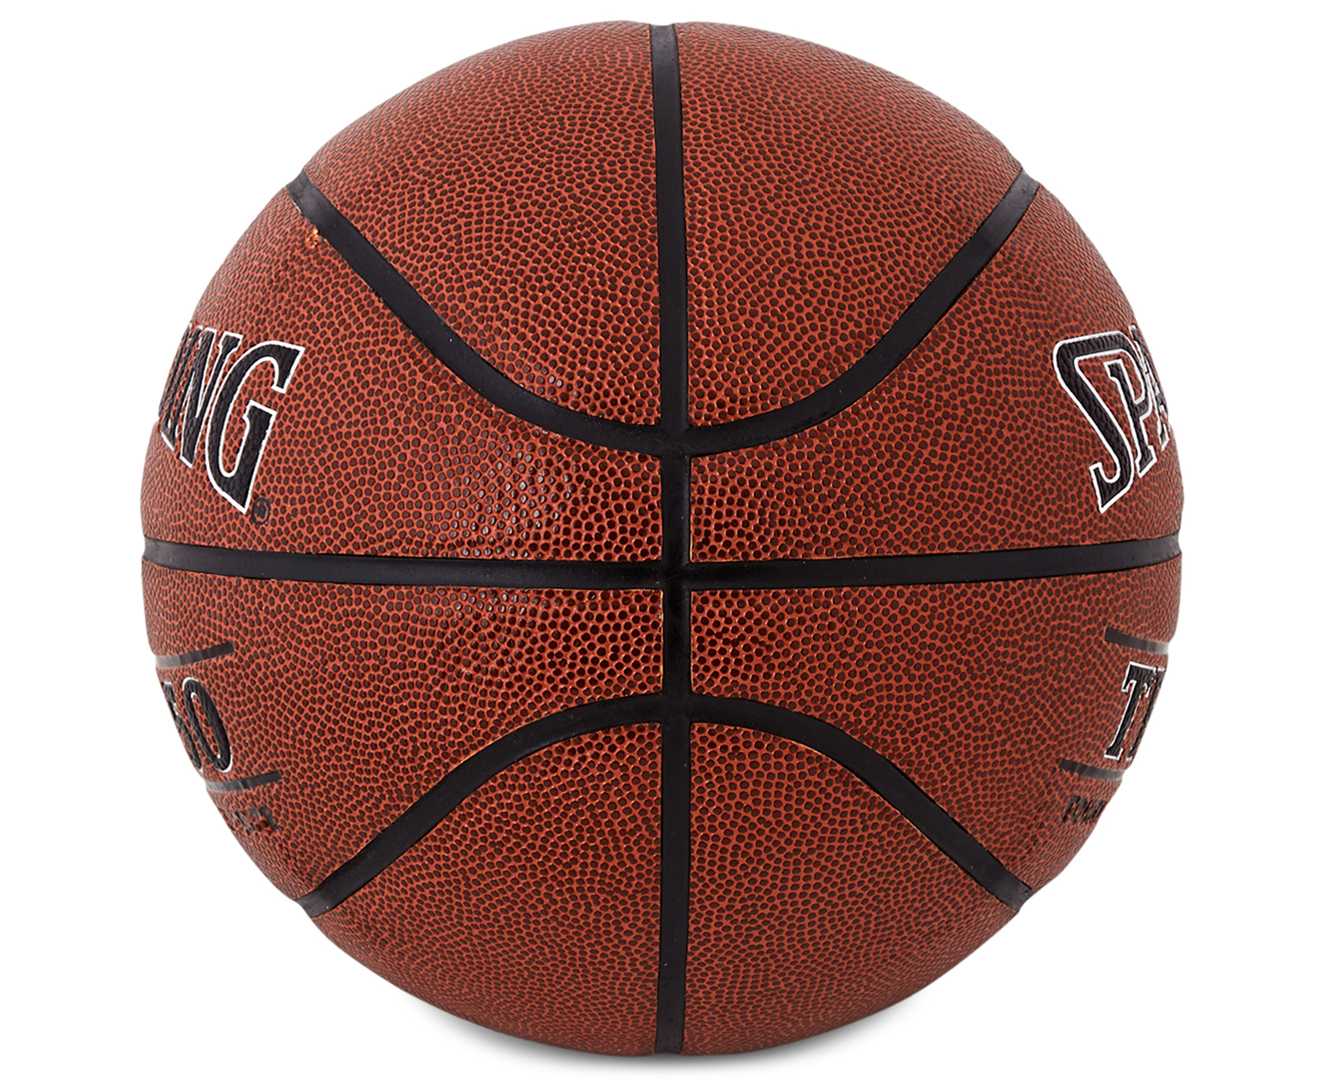 Топ-13 лучших баскетбольных мячей ⛹ - обзор, характеристики, правила выбора